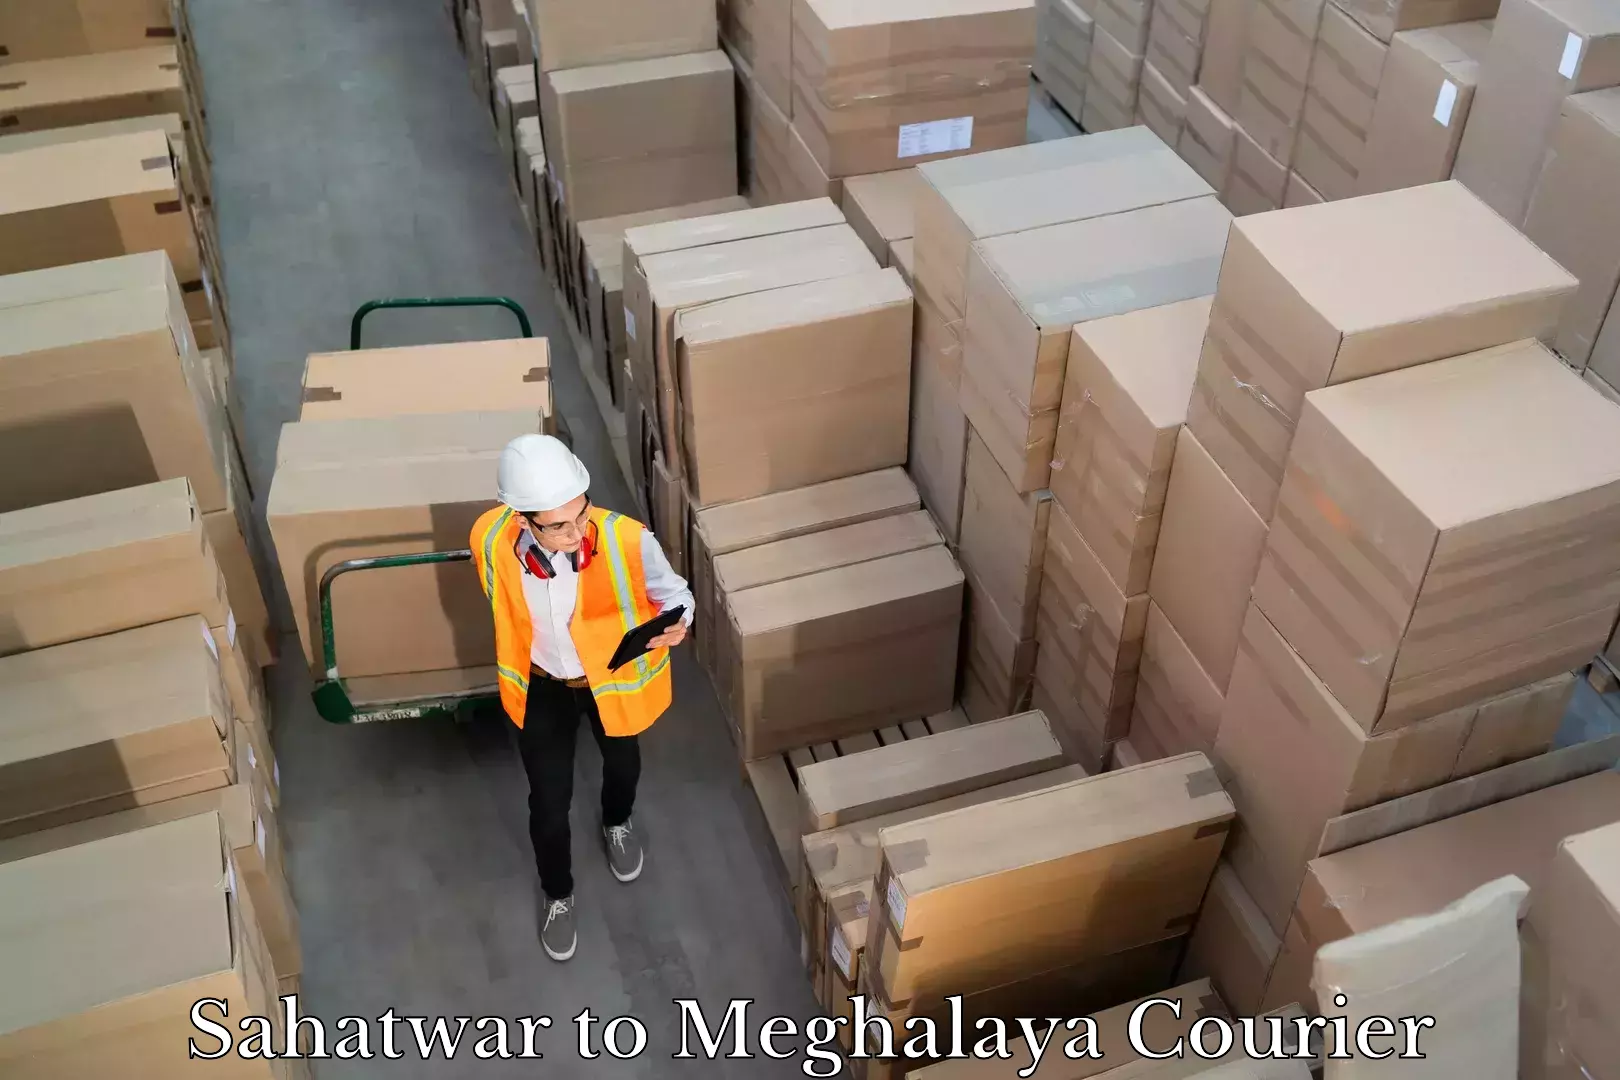 Cargo courier service Sahatwar to Meghalaya